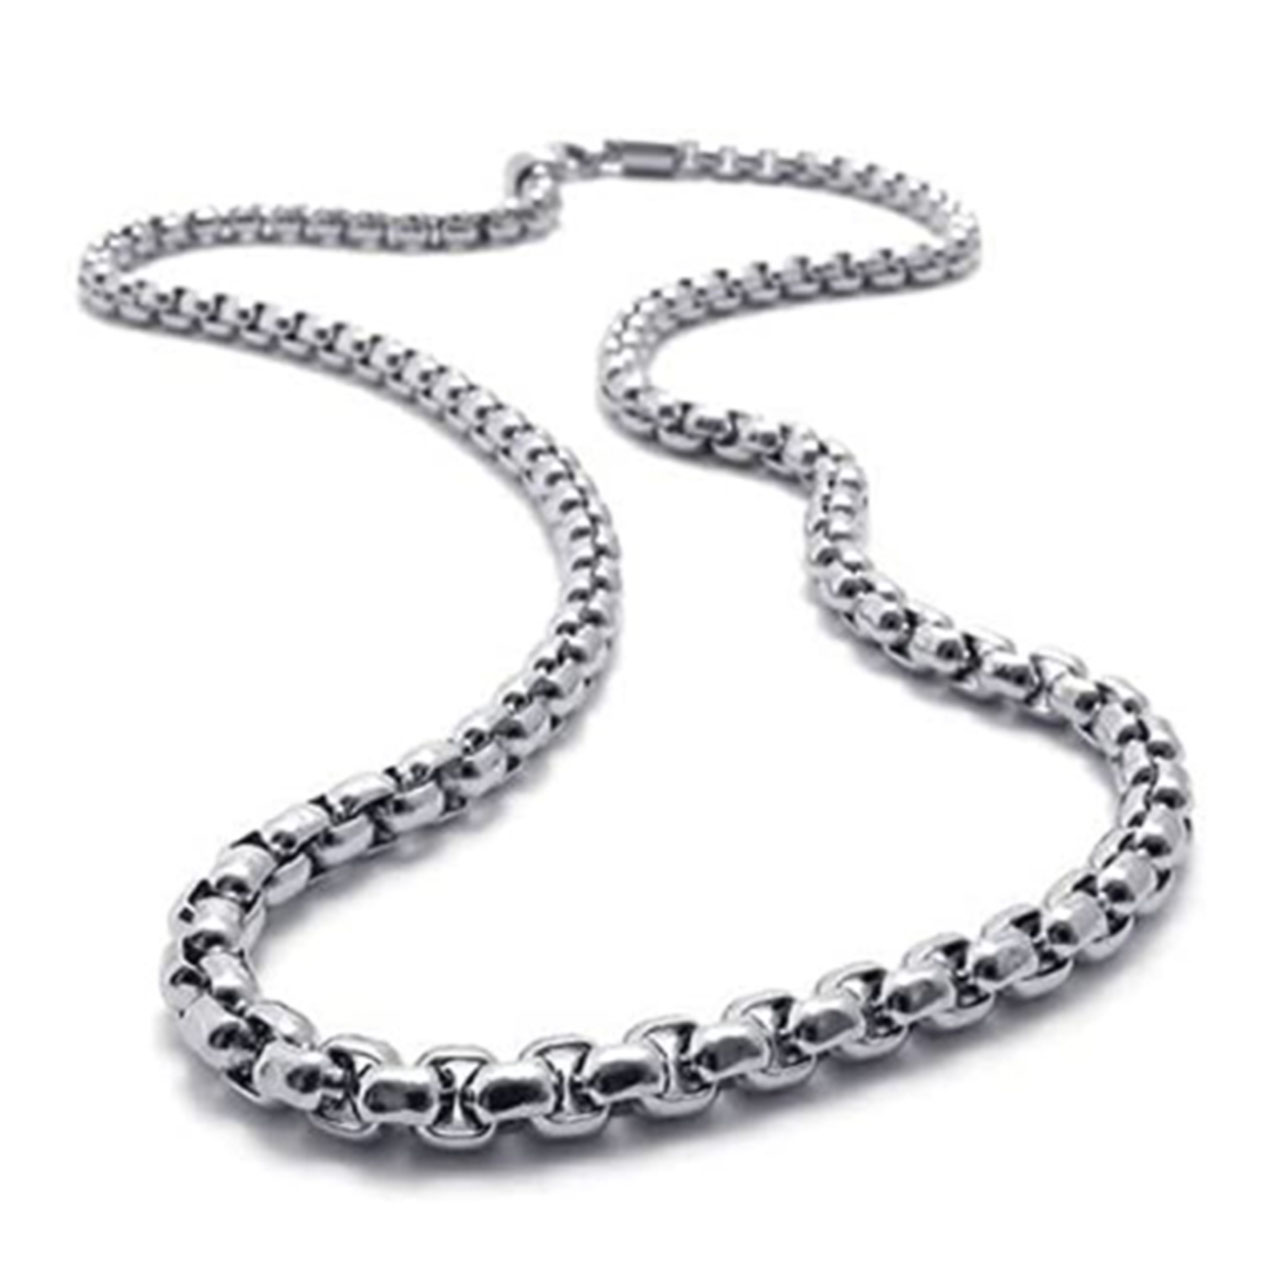 Stainless Steel Jewelry - - Stainless Steel Jewelry - SA